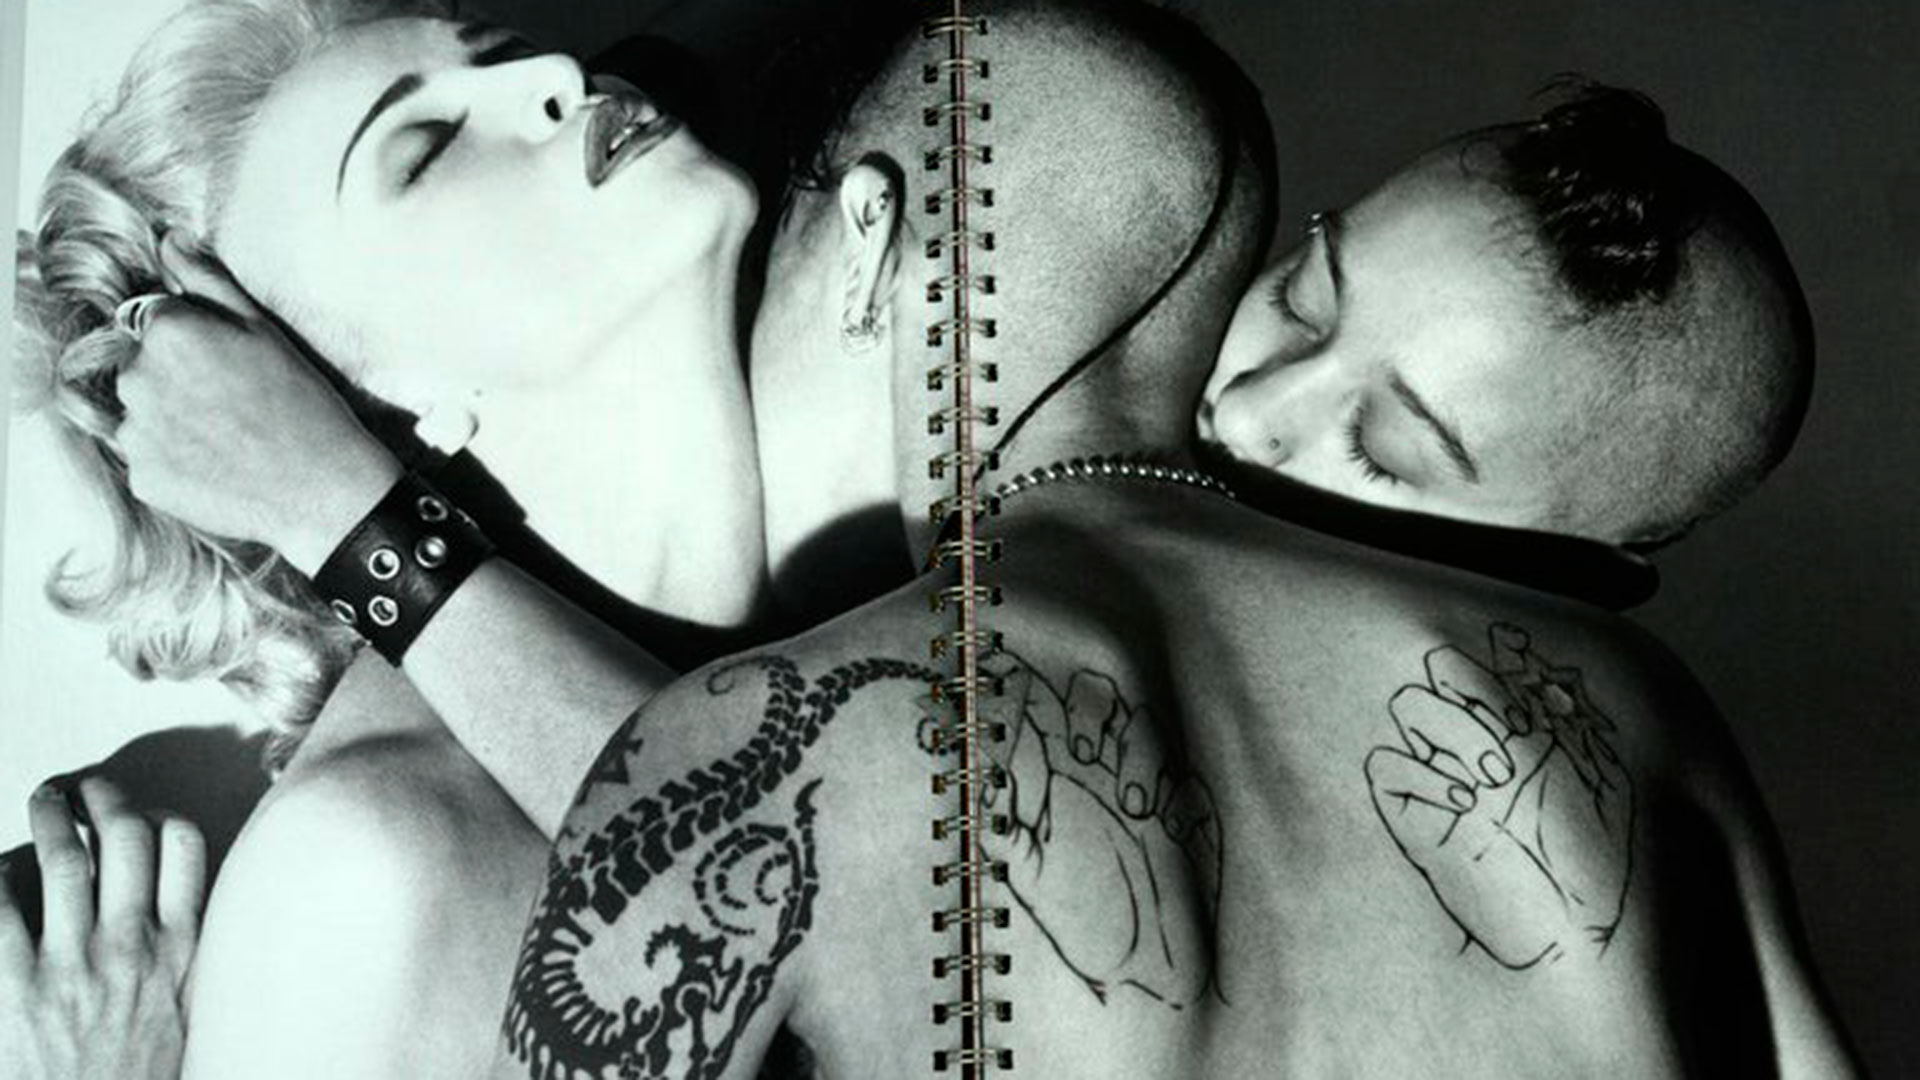 Hace 30 años, Madonna lanzaba Sex, el libro de fotos eróticas que se convirtió en el proyecto más polémico de su carrera